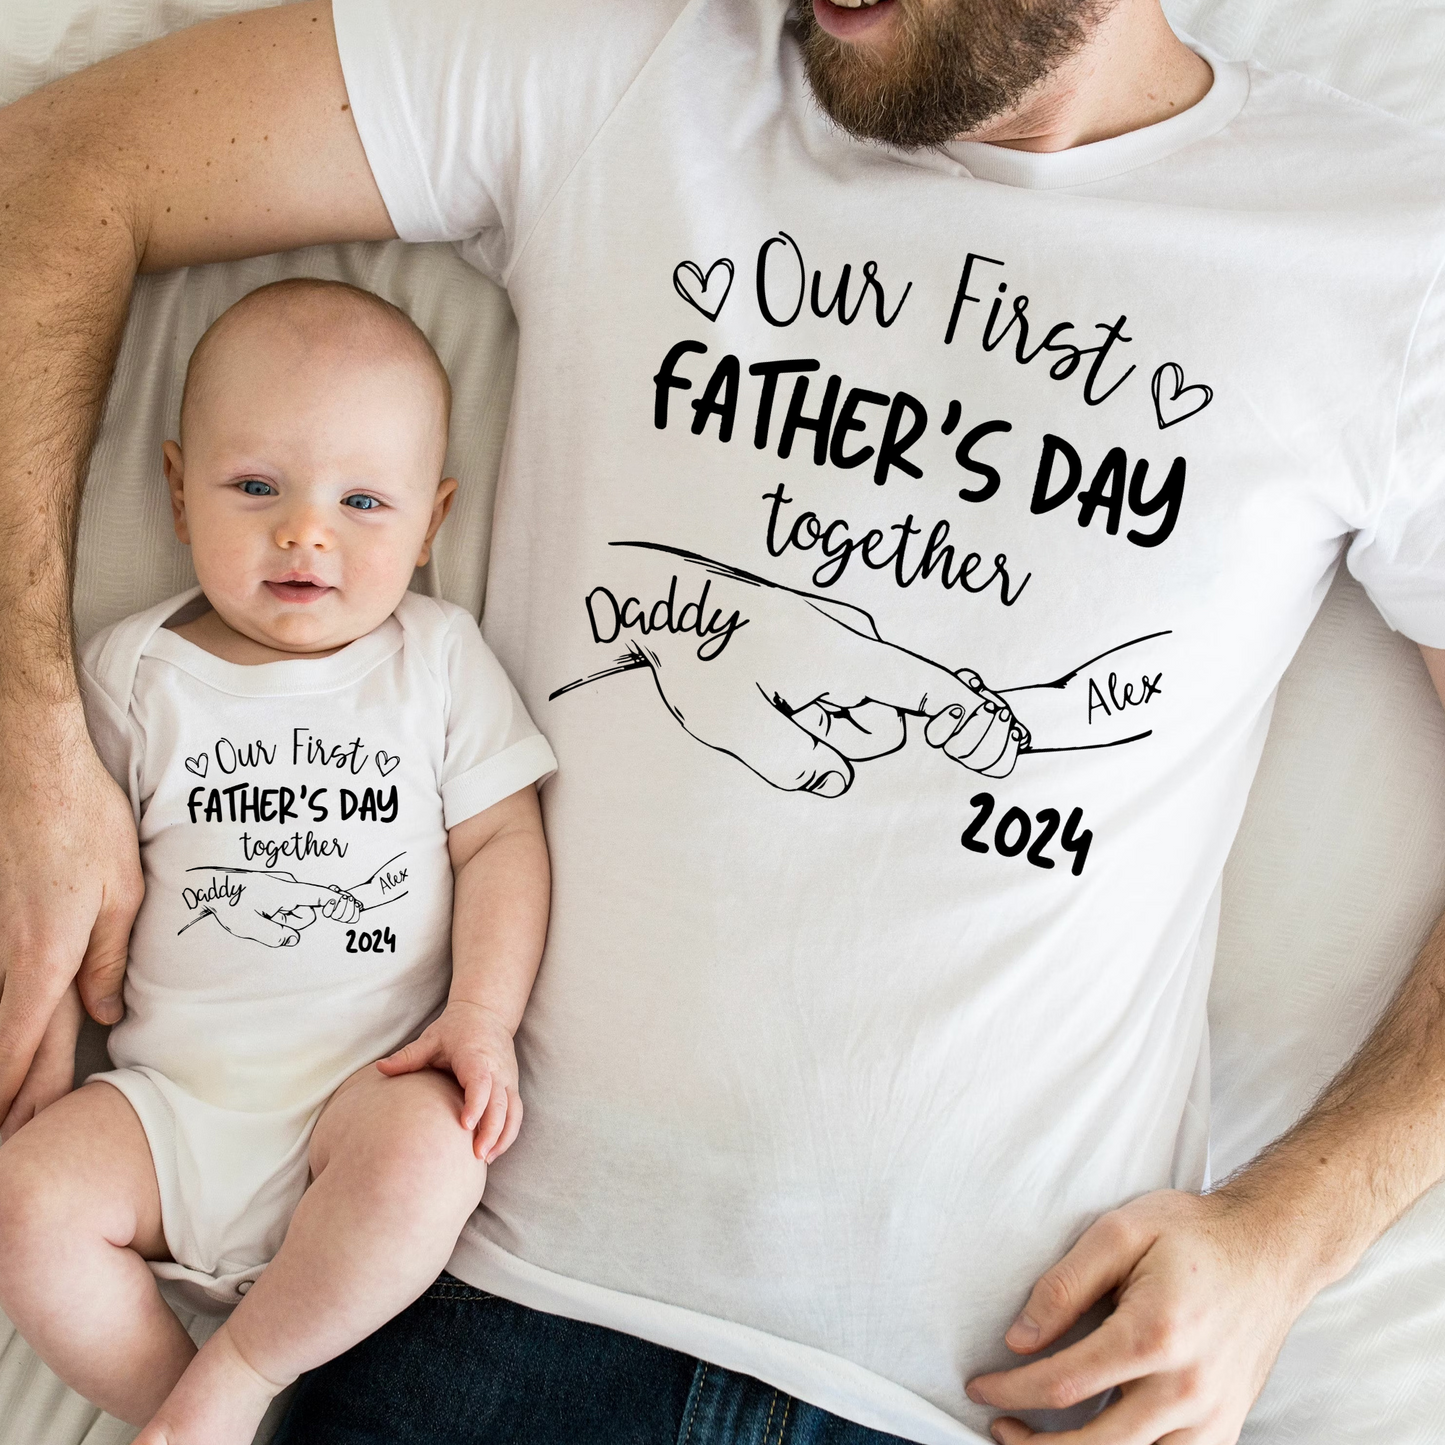 Unser Erster Vatertag Zusammen - Personalisiertes T-Shirt